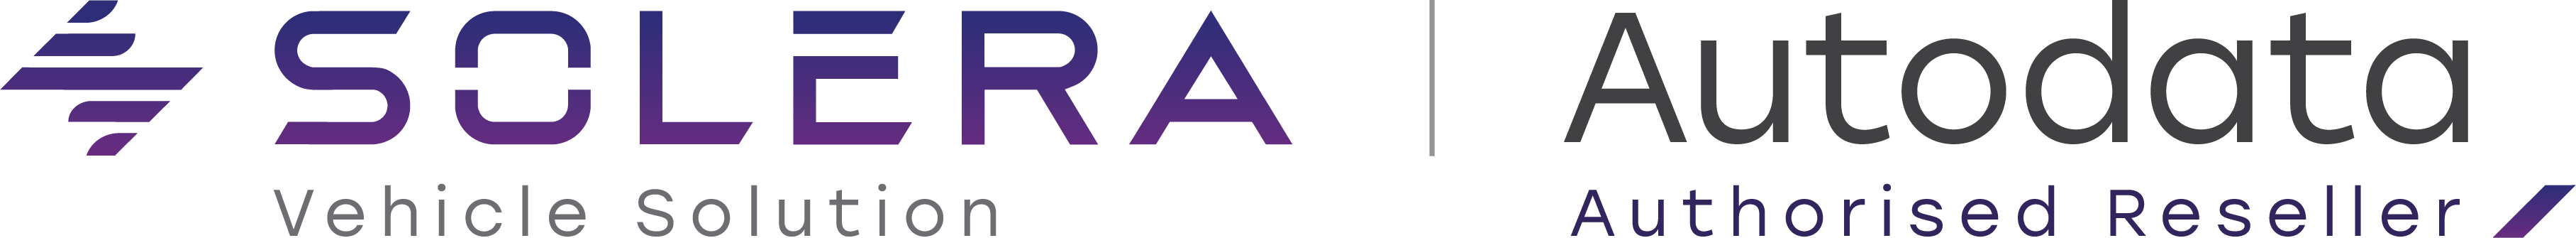 Logotip-Soleta-in-Autodata